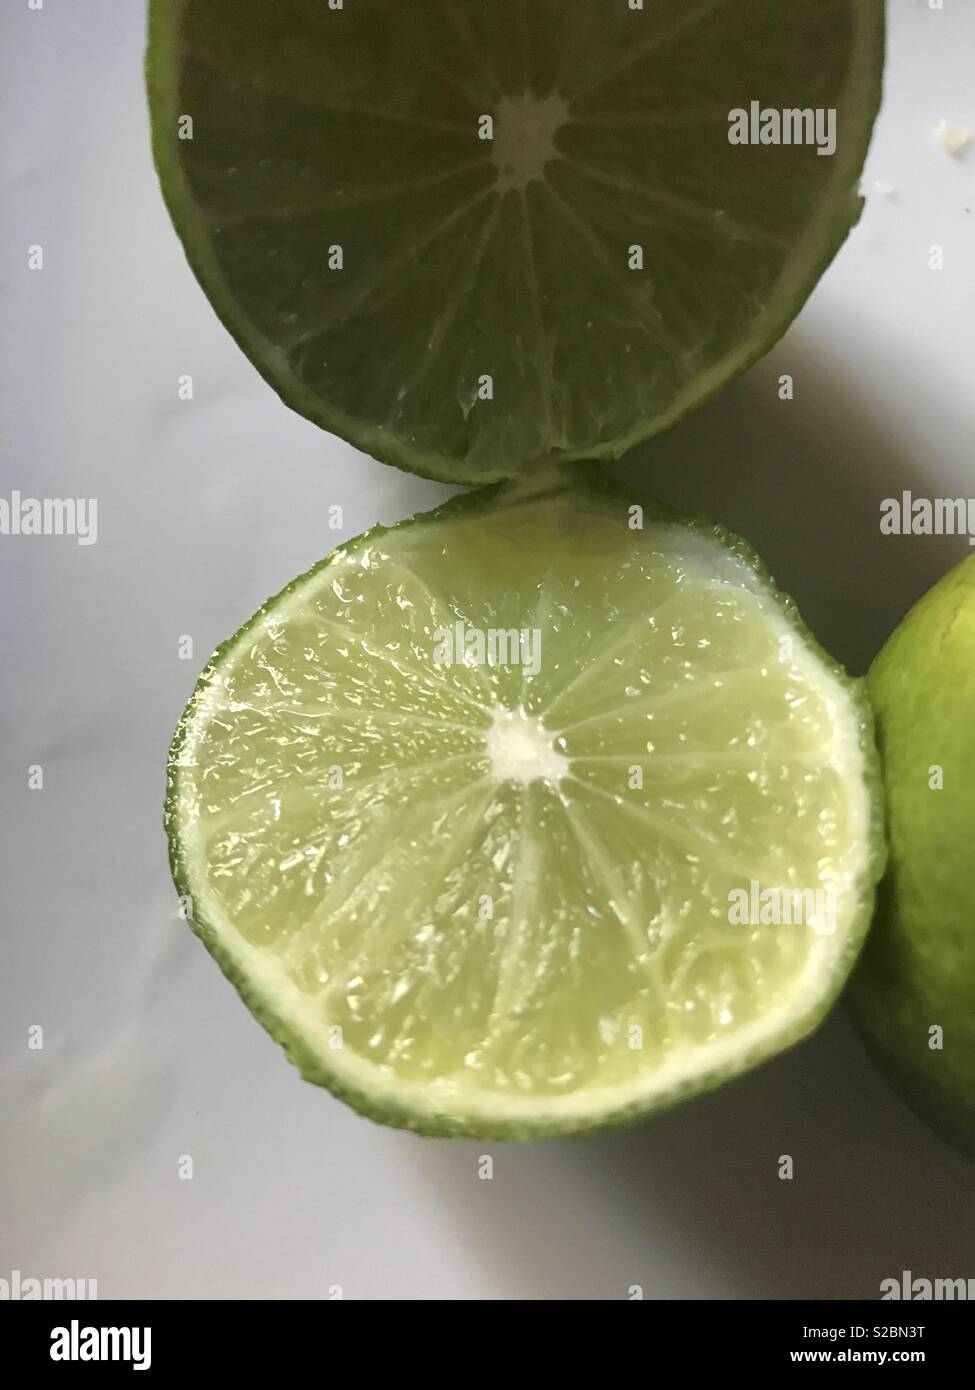 Les agrumes - limes affichées sur une plaque blanche dans la cuisine Banque D'Images